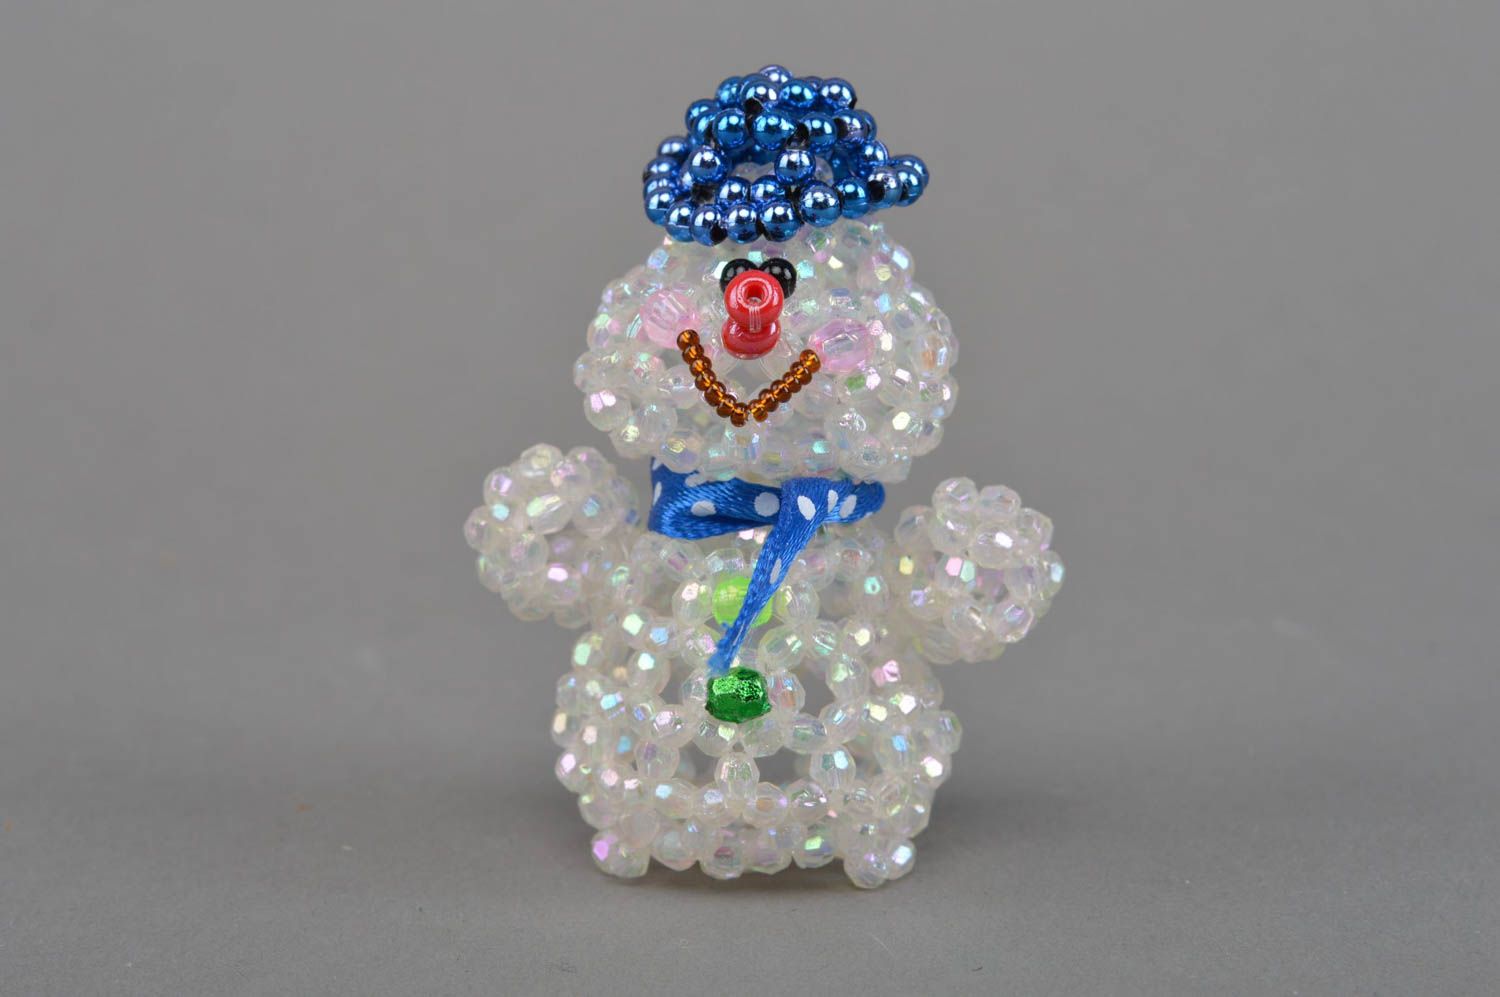 estatueta bonita de lembrança feita à mão de miçangas em forma do boneco de neve foto 4